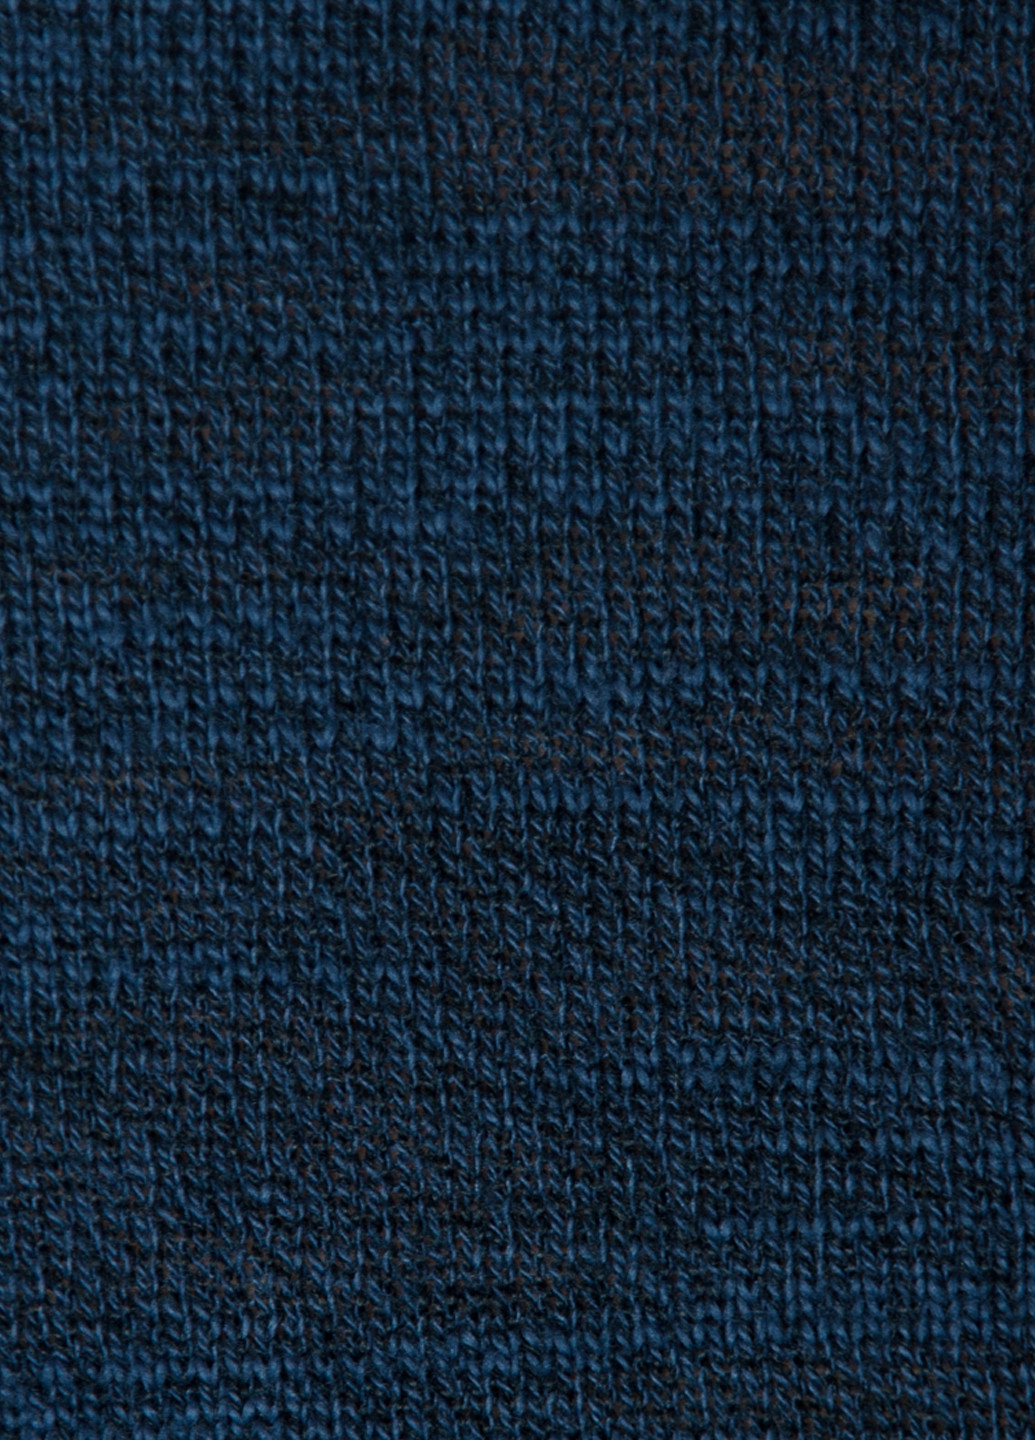 Синий зимний пуловер мужской Arber V-neck N-AVT-67